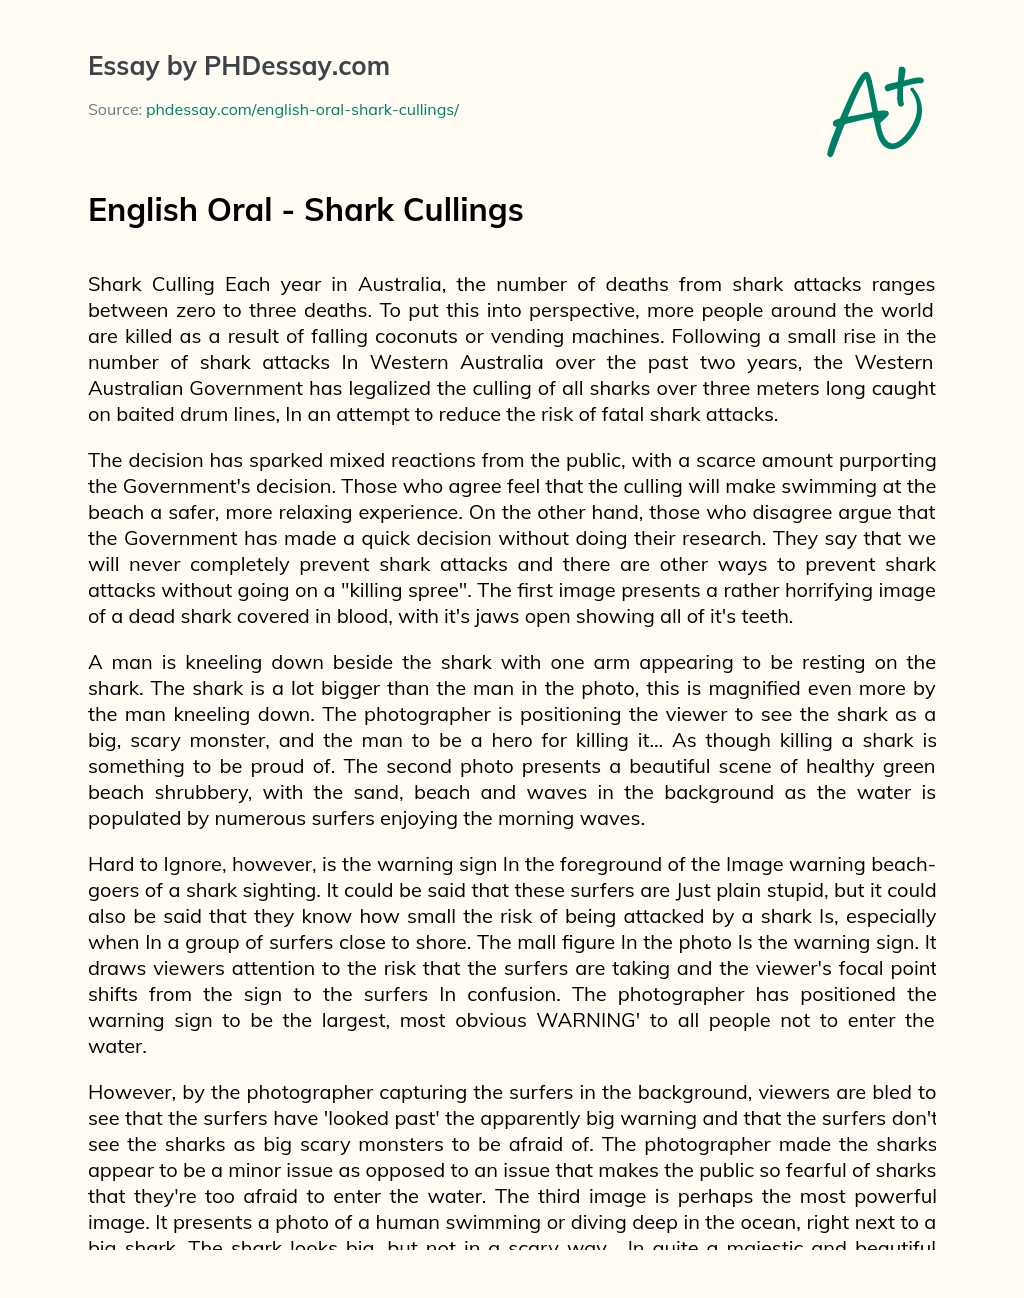 English Oral – Shark Cullings essay